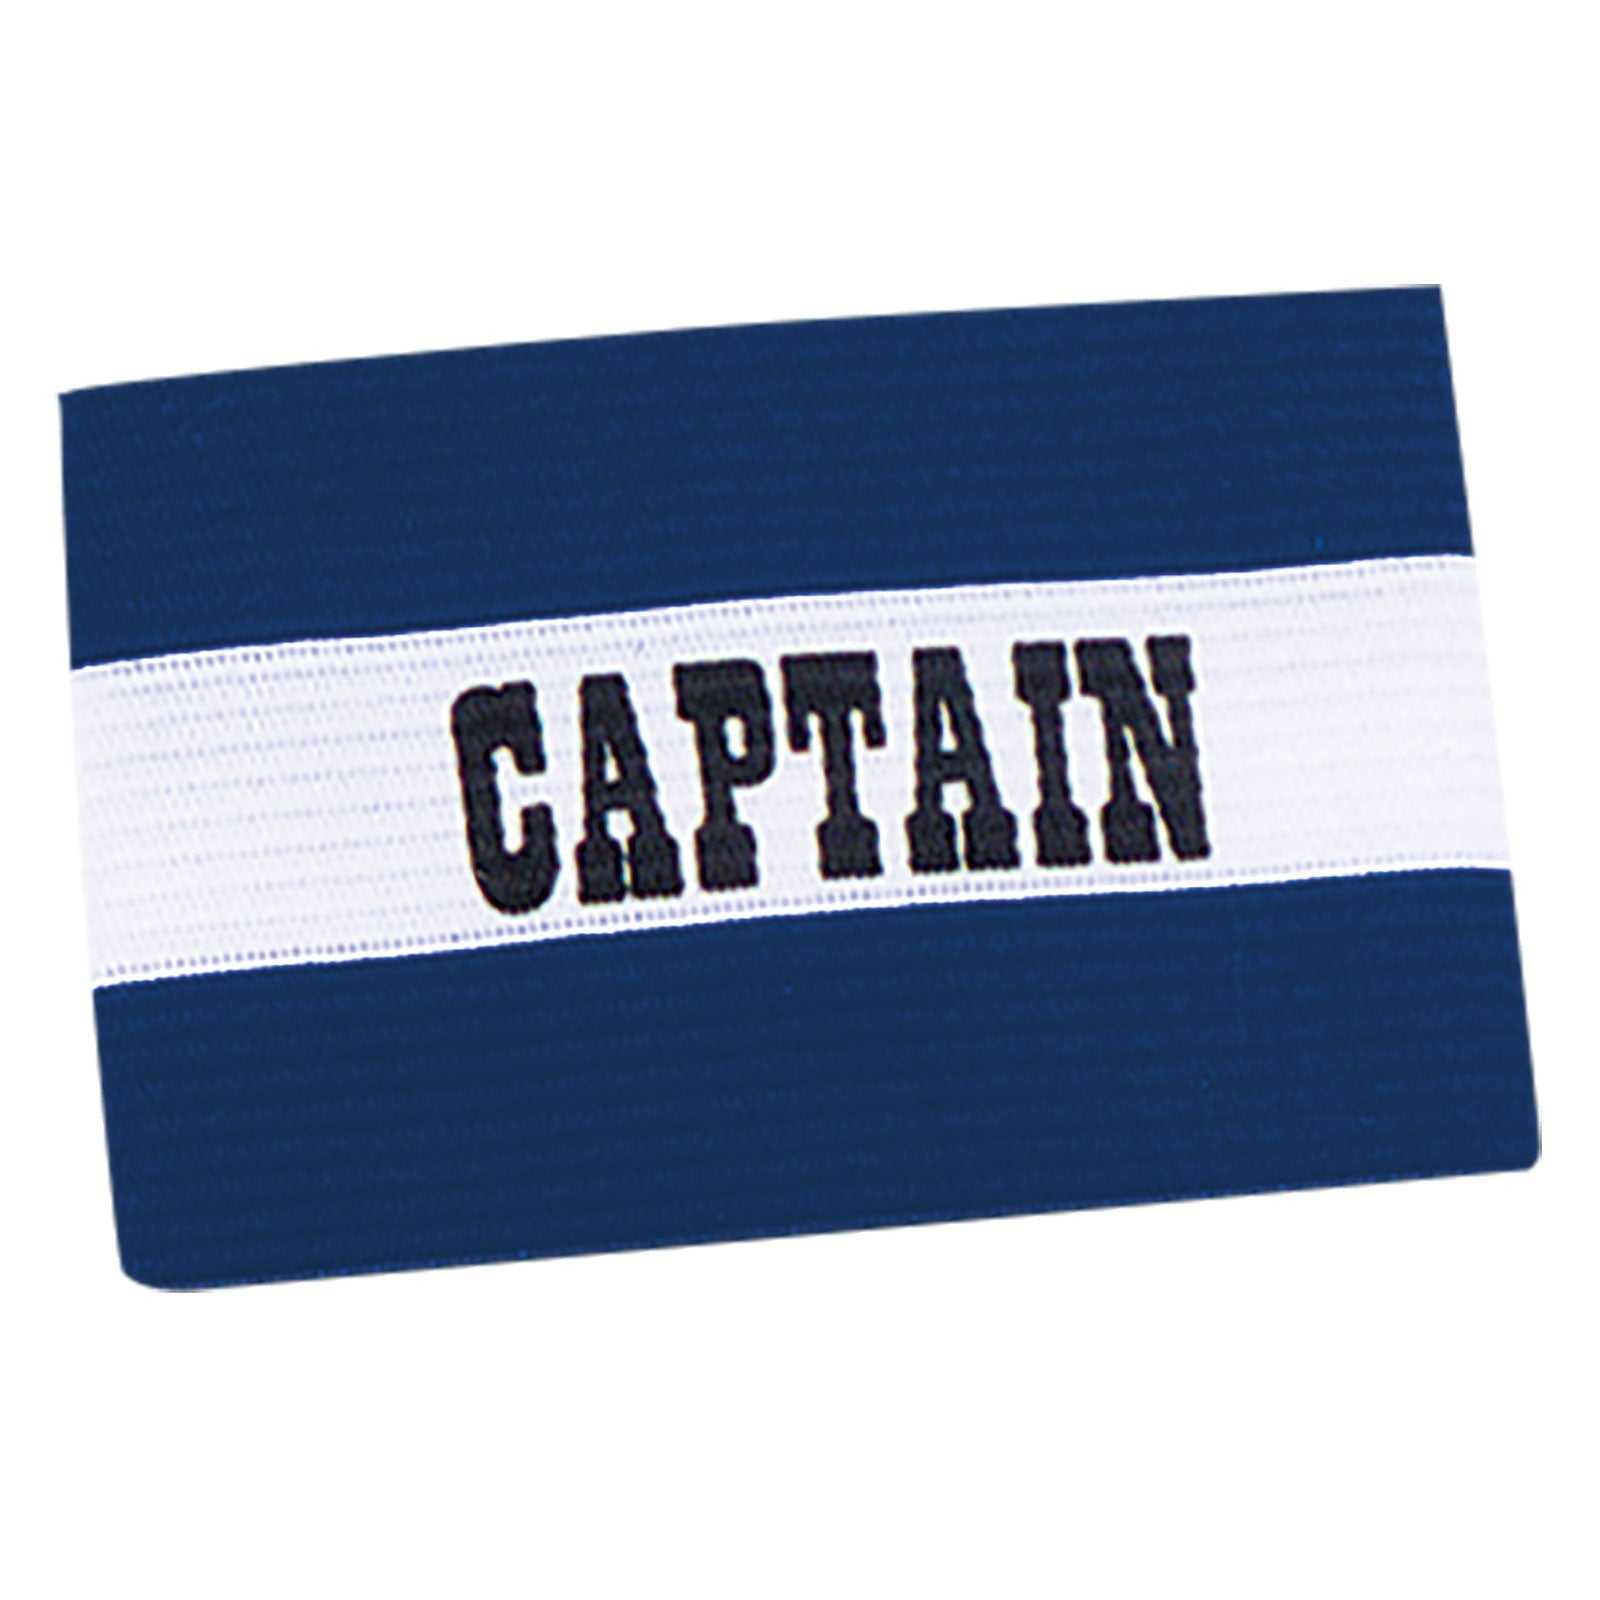 Champro A195 Captain's Arm Bands - Royal - HIT a Double